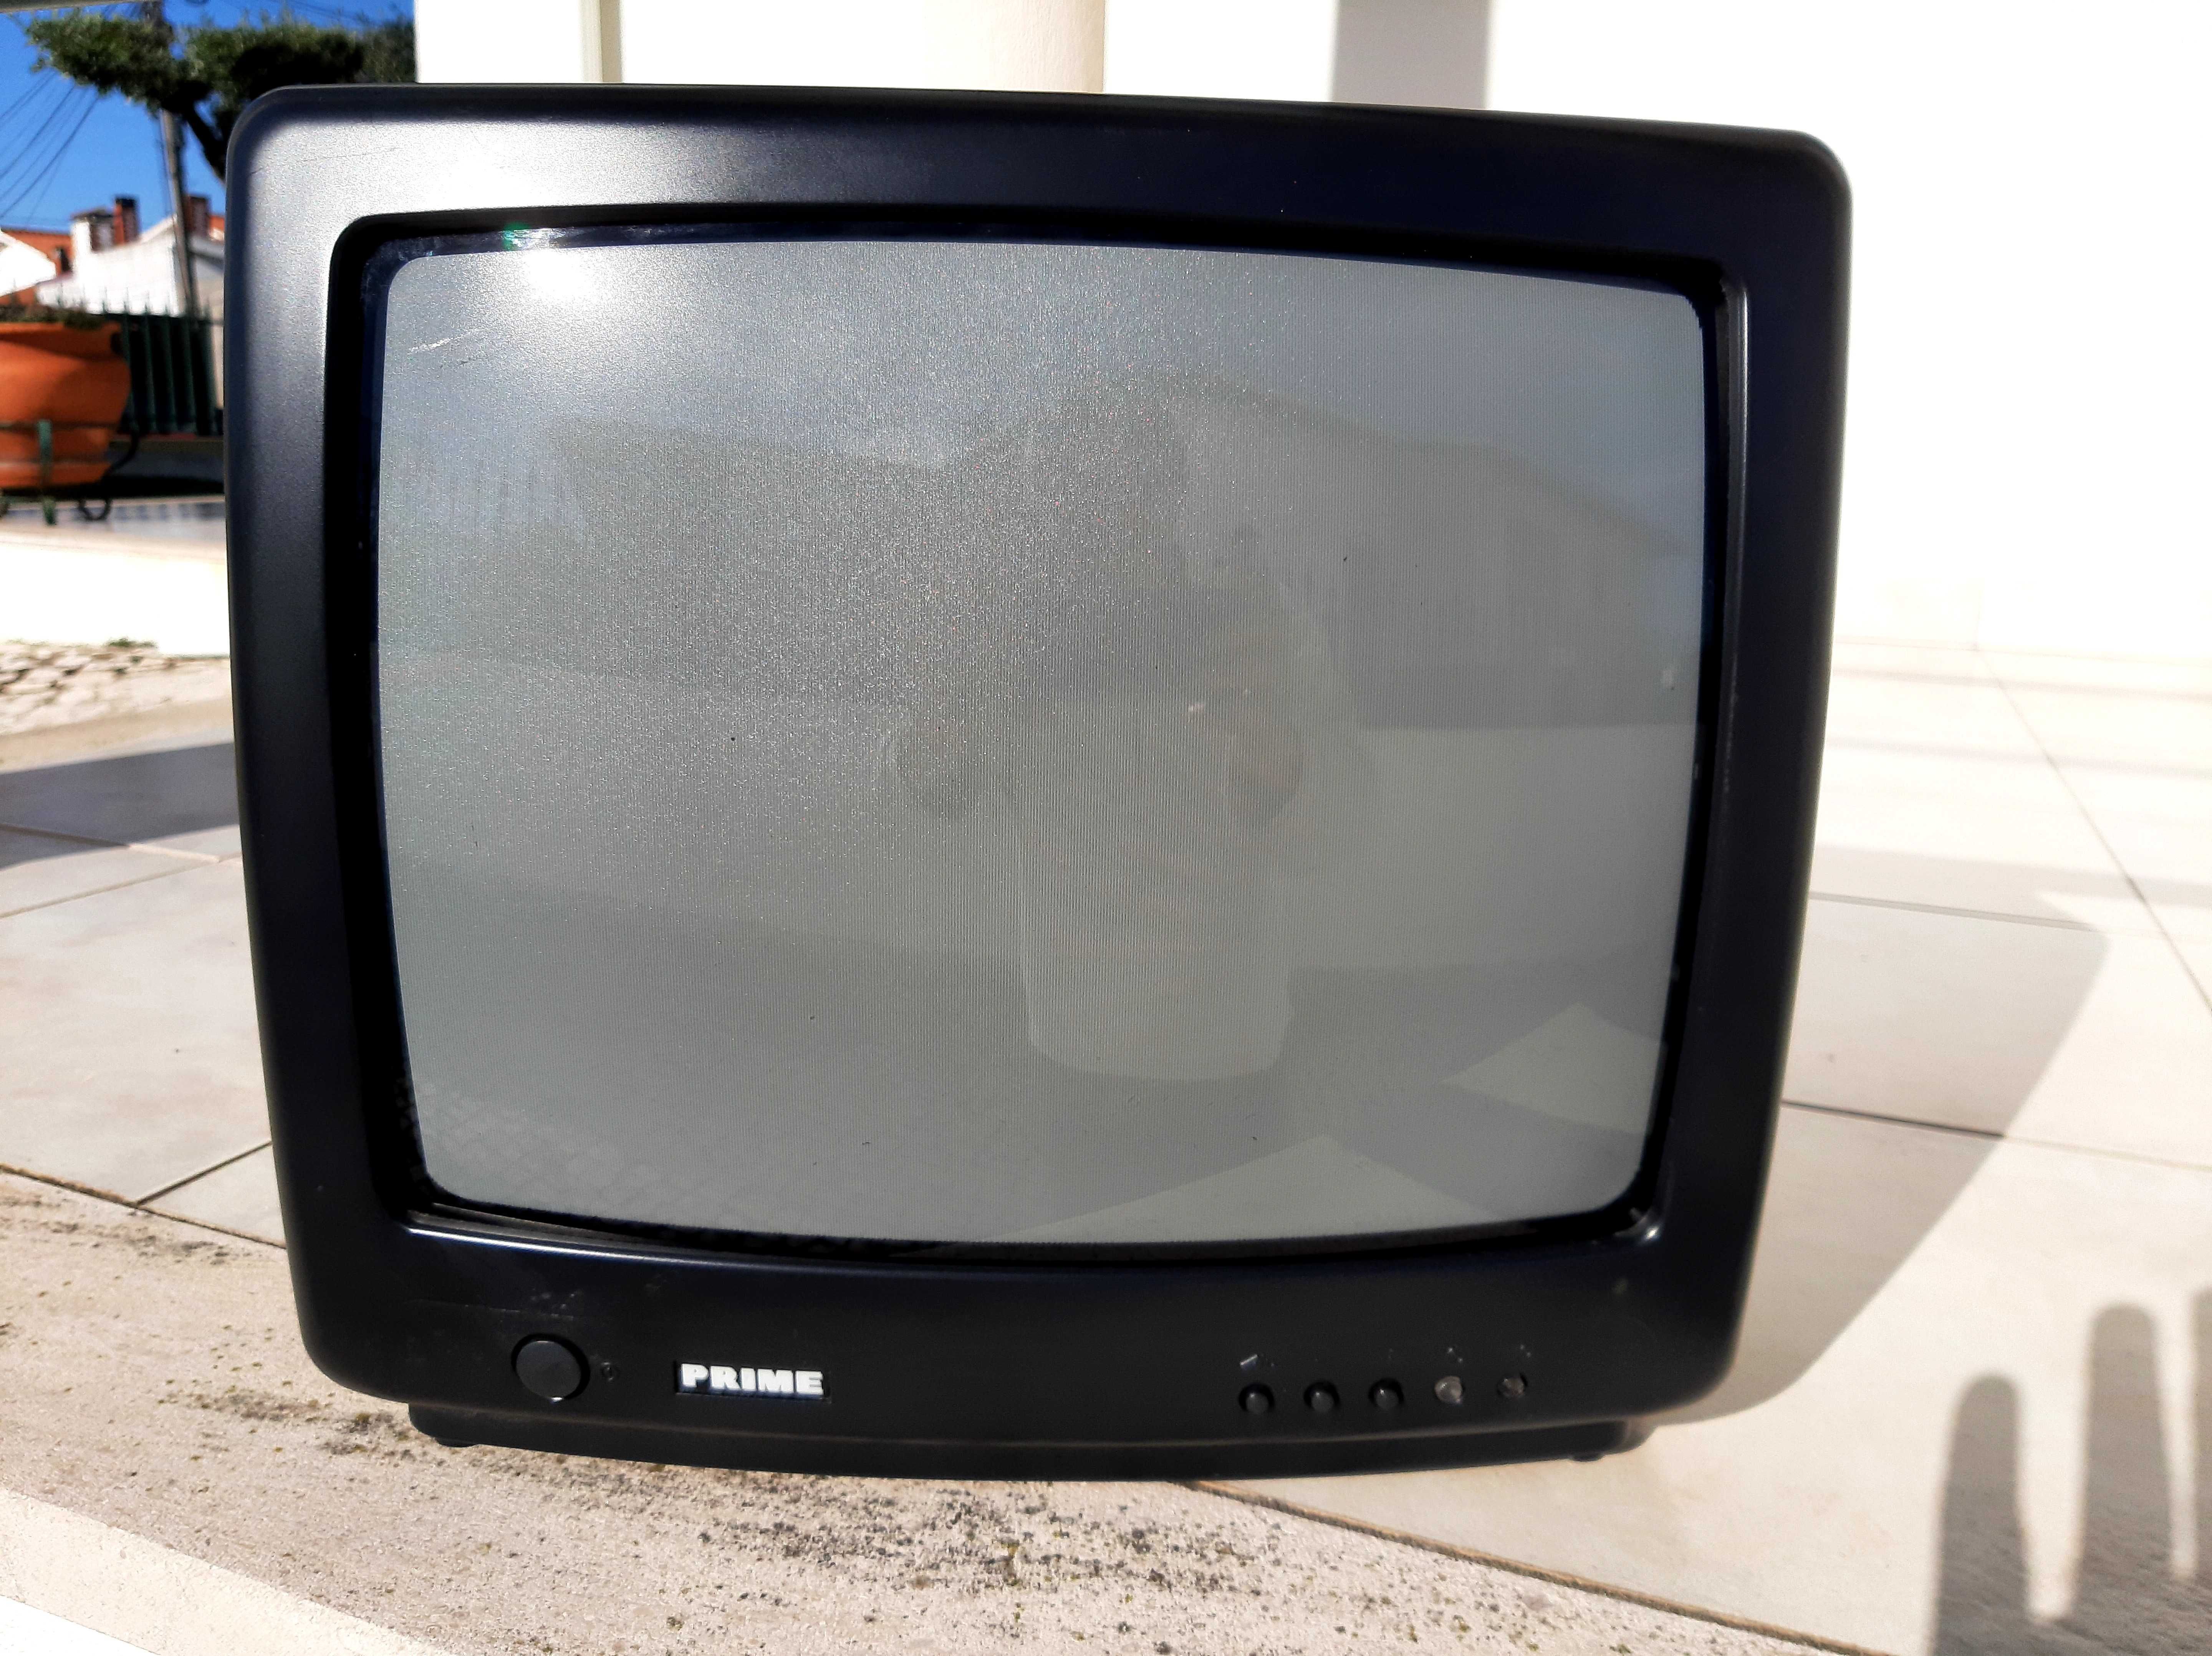 Televisor pequeno usado